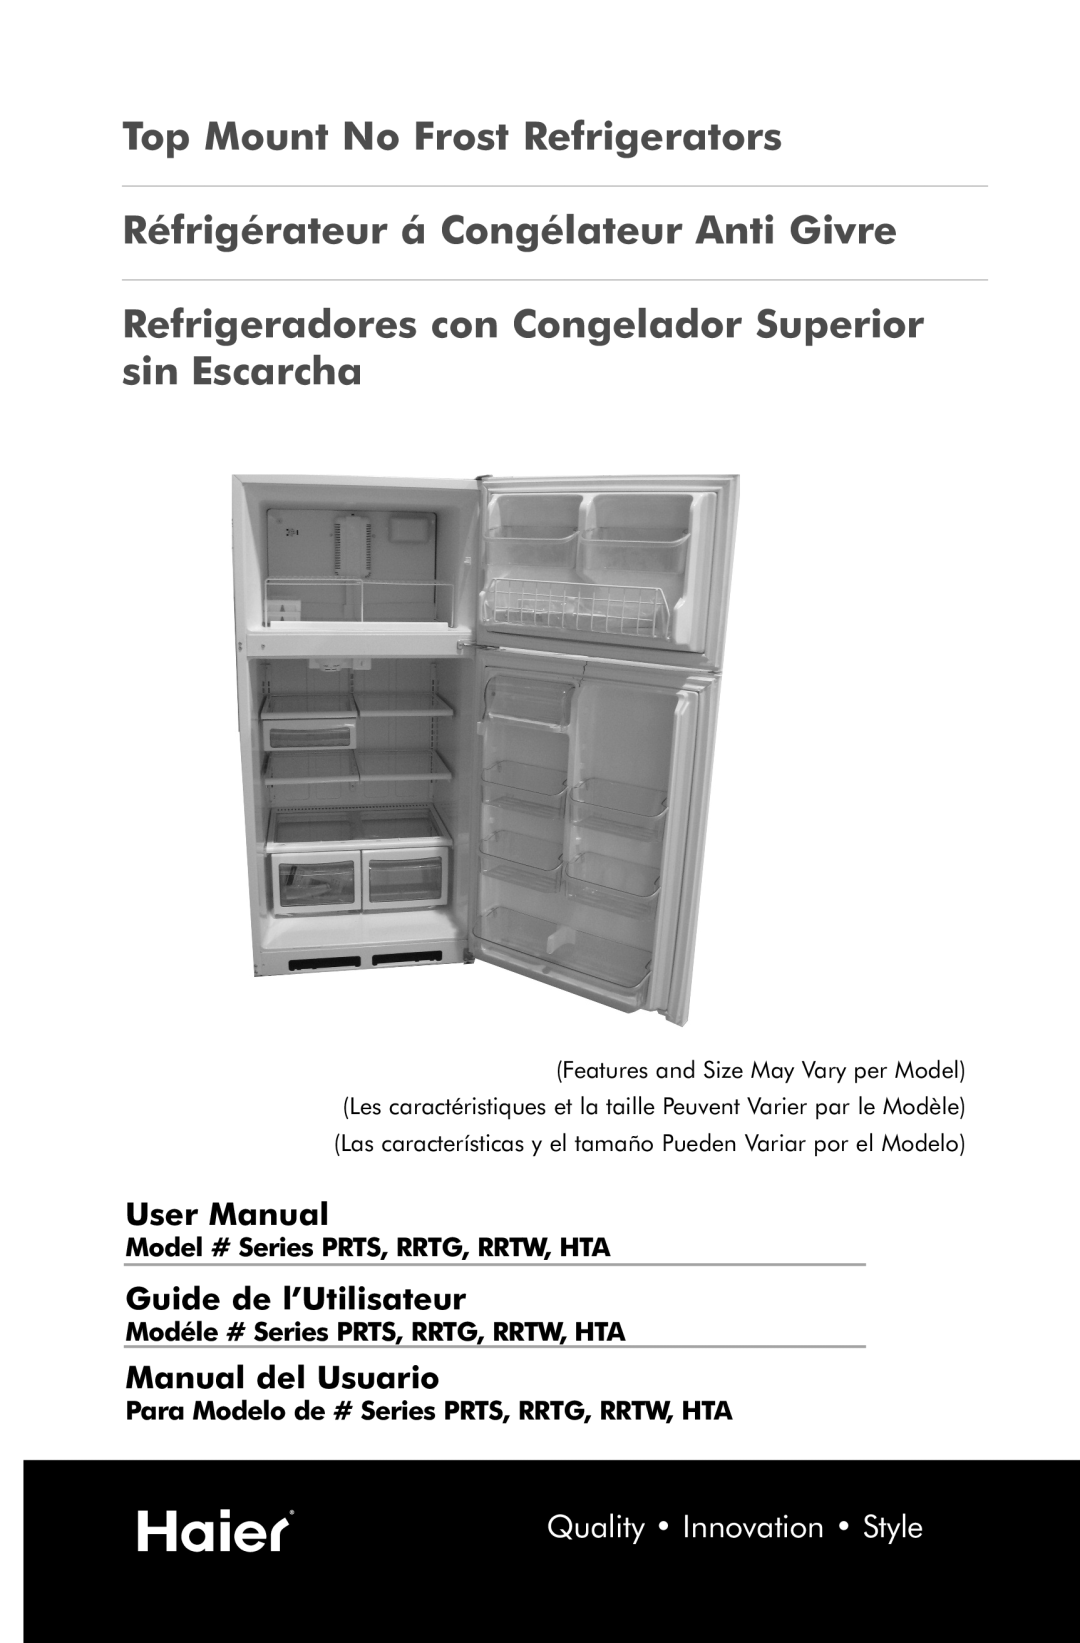 Haier PRTS, RRTG manual User Manual, Guide de l’Utilisateur, Manual del Usuario, Top Mount No Frost Refrigerators 